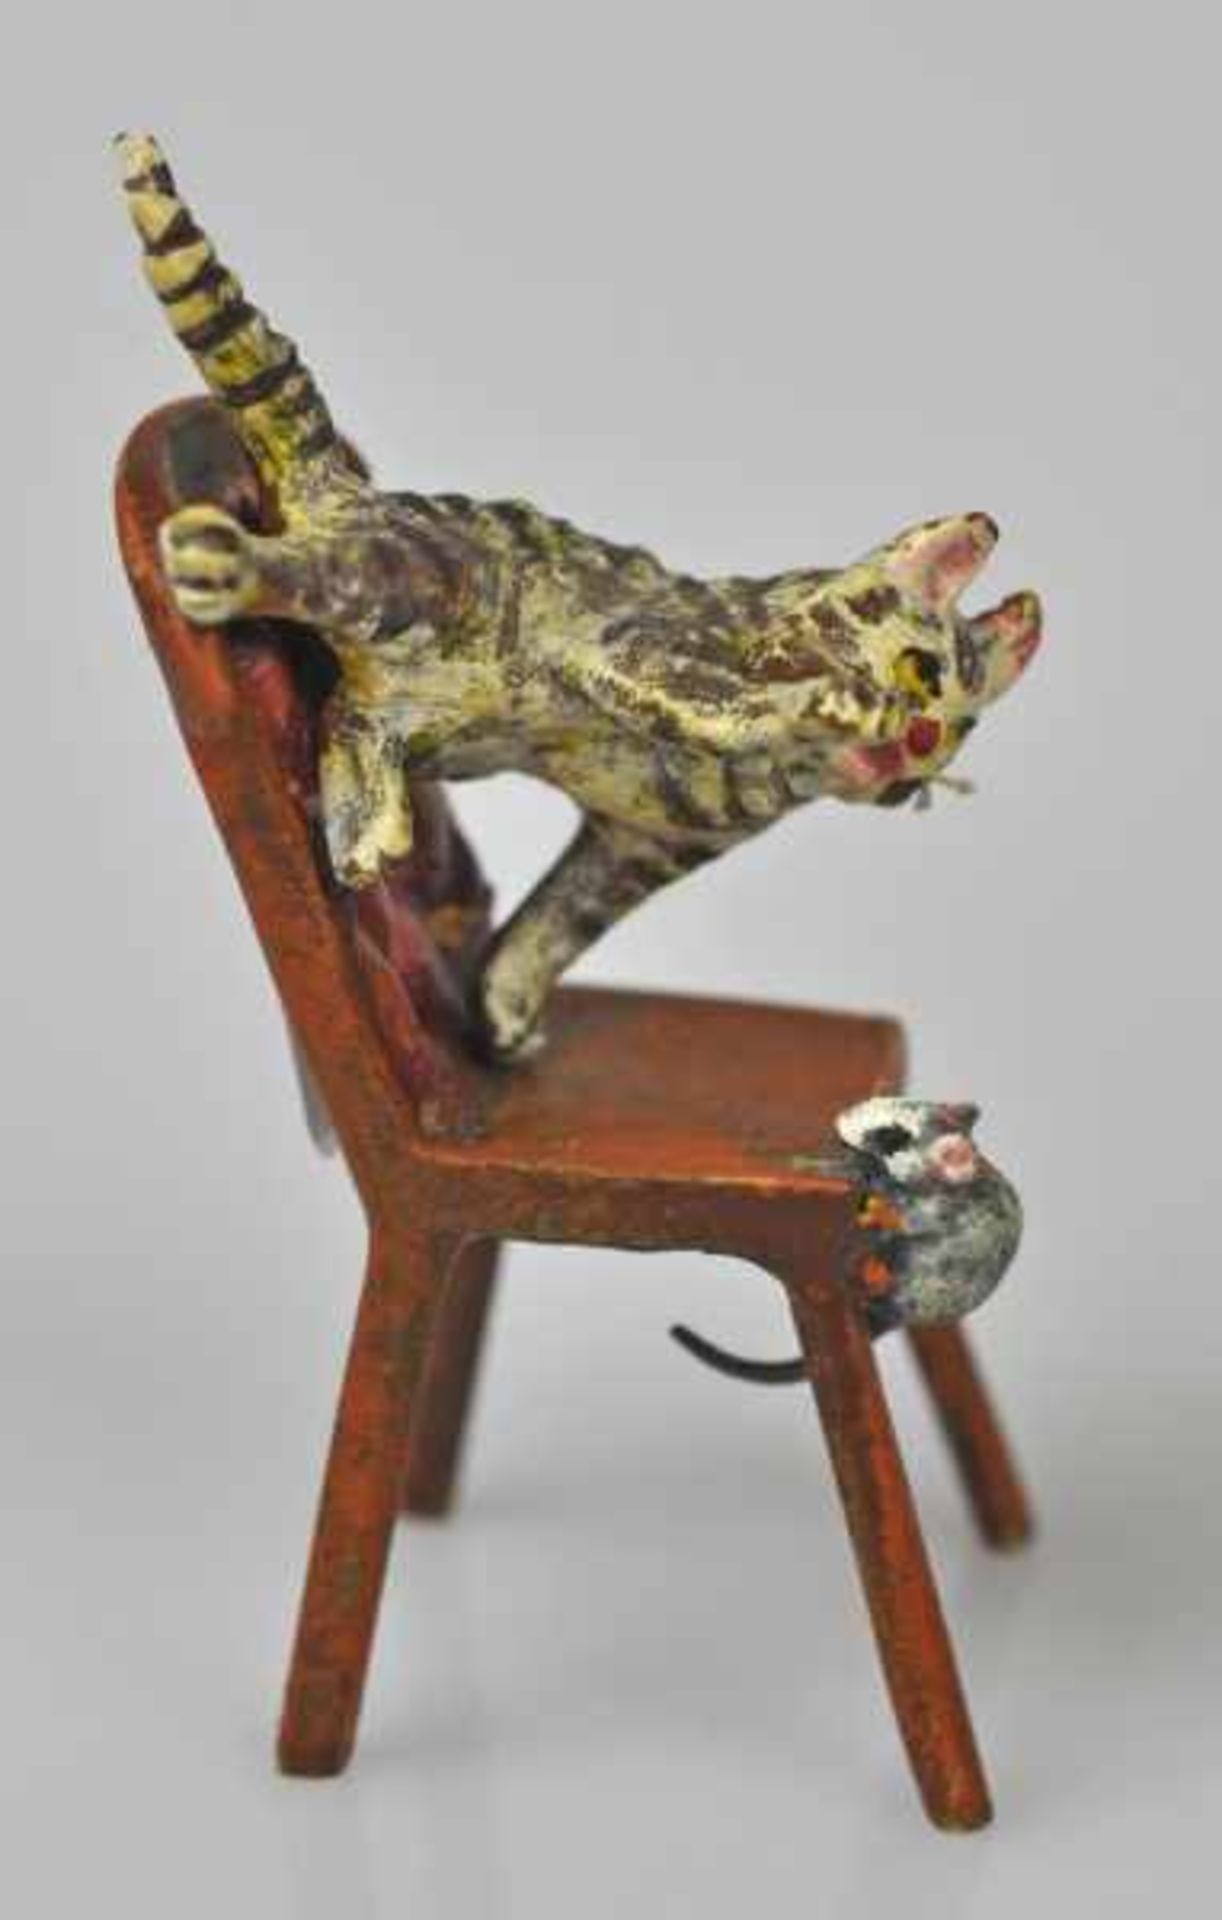 KATZE eine Maus jagend, auf Stuhl, Wiener Bronze, gemarkt u. bez. Bermann Wien, H 5cm - Image 3 of 3